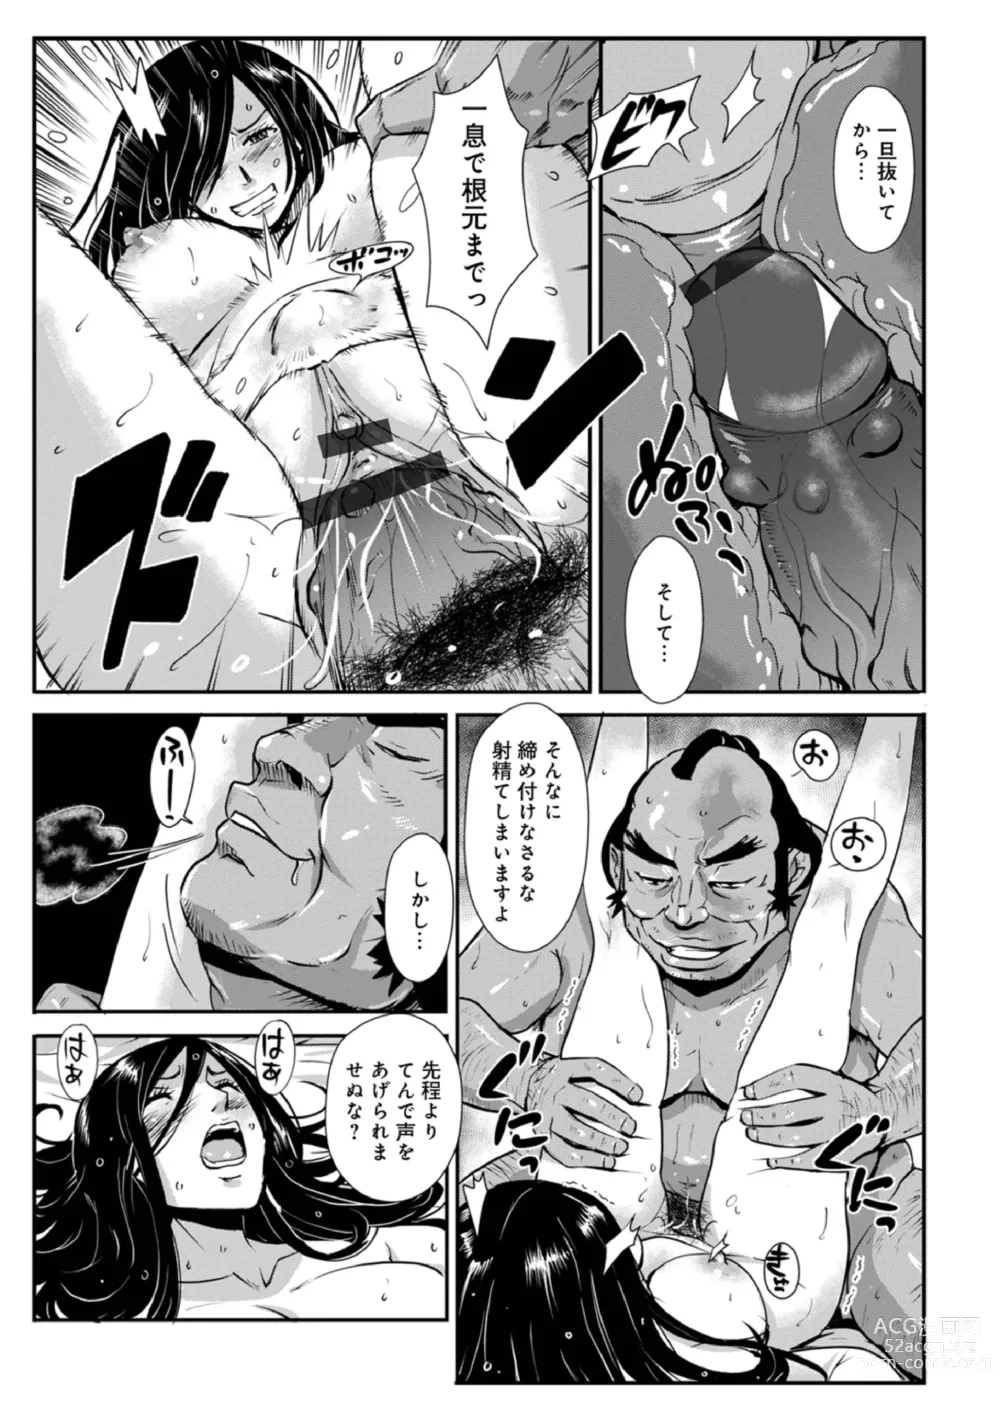 Page 5 of manga Harami samurai 15 ~Biyaku ni Nureru Onna Kenshi no Inwai na Nikutsubo~